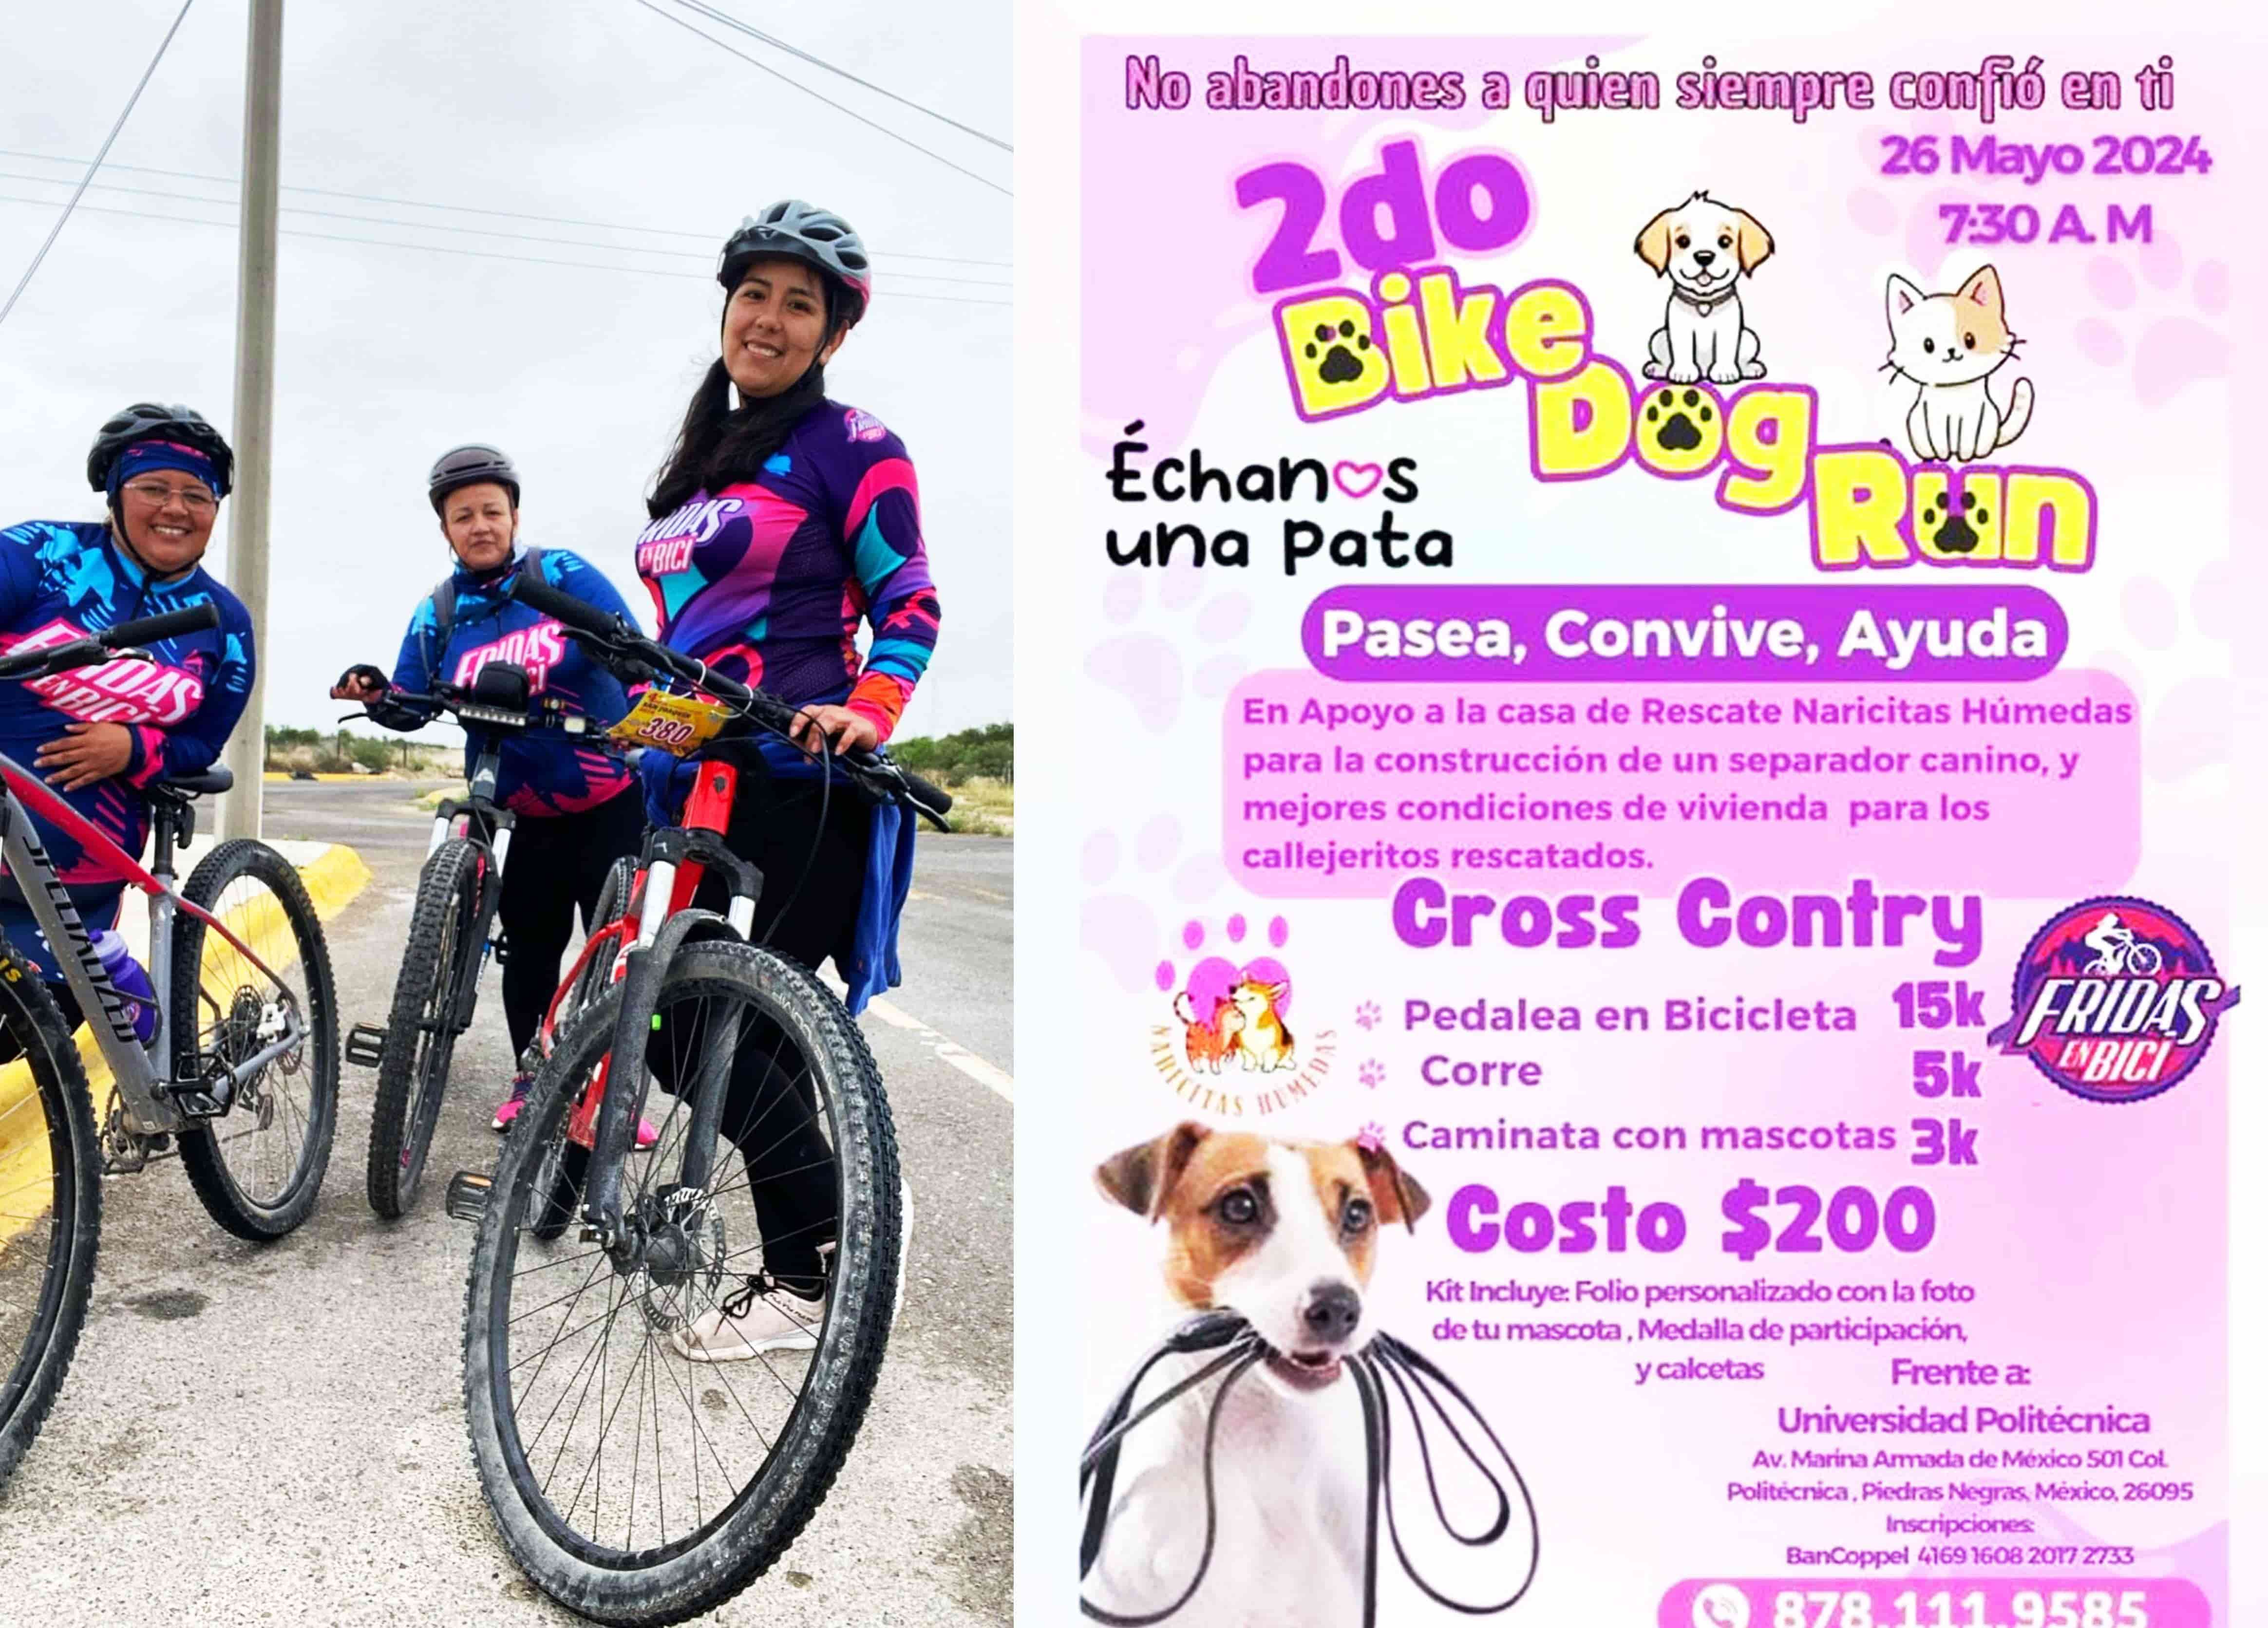 ¡Bike Dog Run 2024! Únete al evento solidario más perrón del año